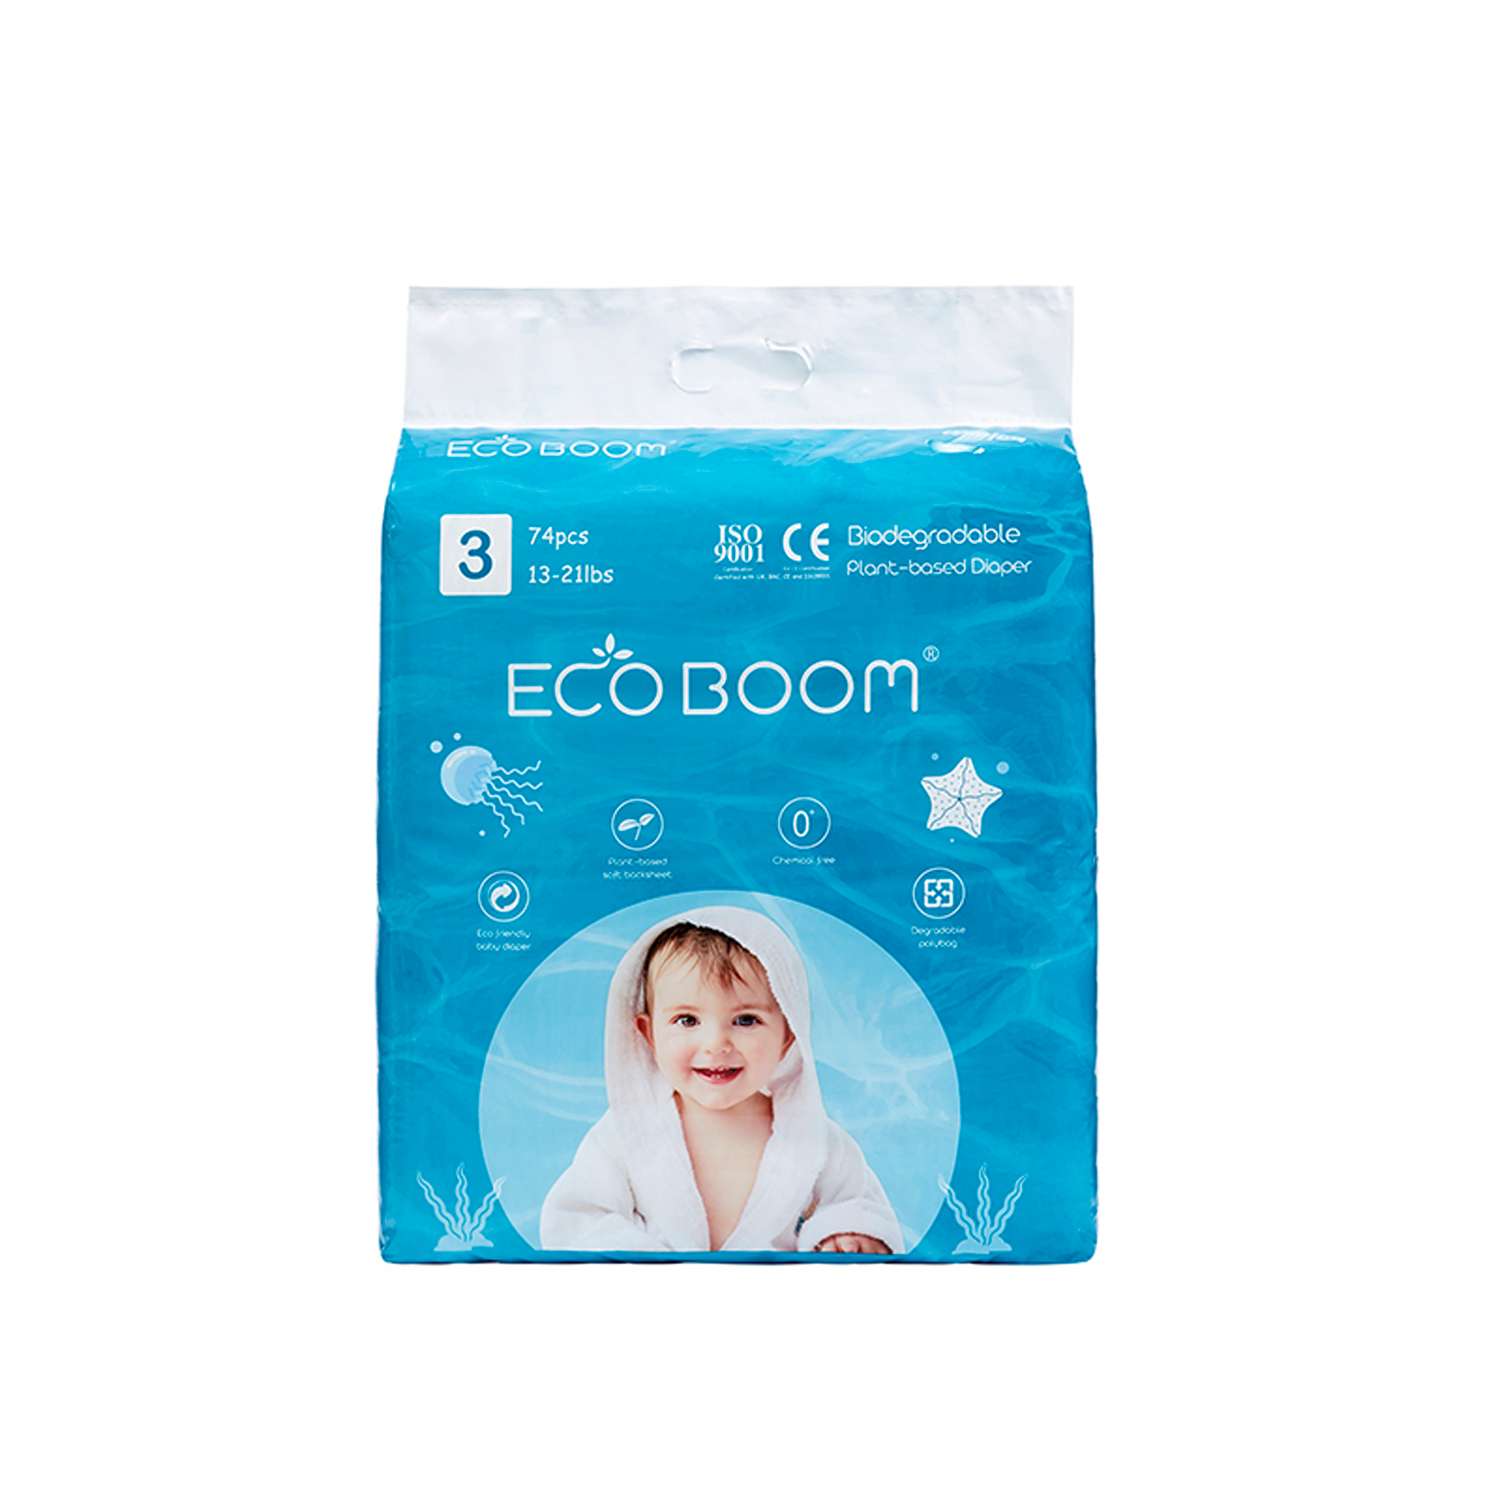 Эко подгузники детские ECO BOOM размер 3/M для детей весом 6-10 кг 74 шт - фото 1